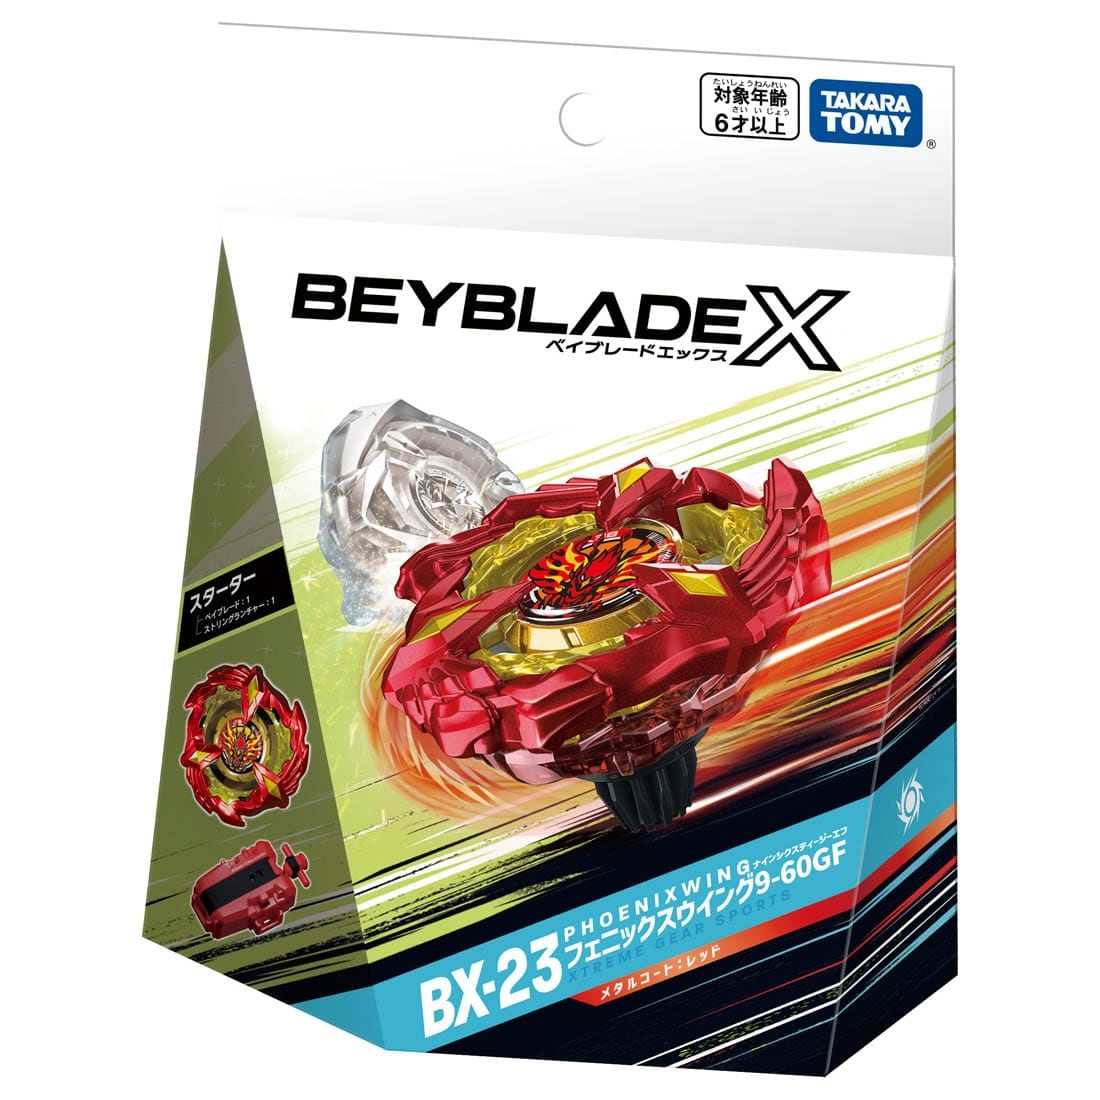 BEYBLADE X『BX-23 スターター フェニックスウイング9-60GF』ベイブレード-004